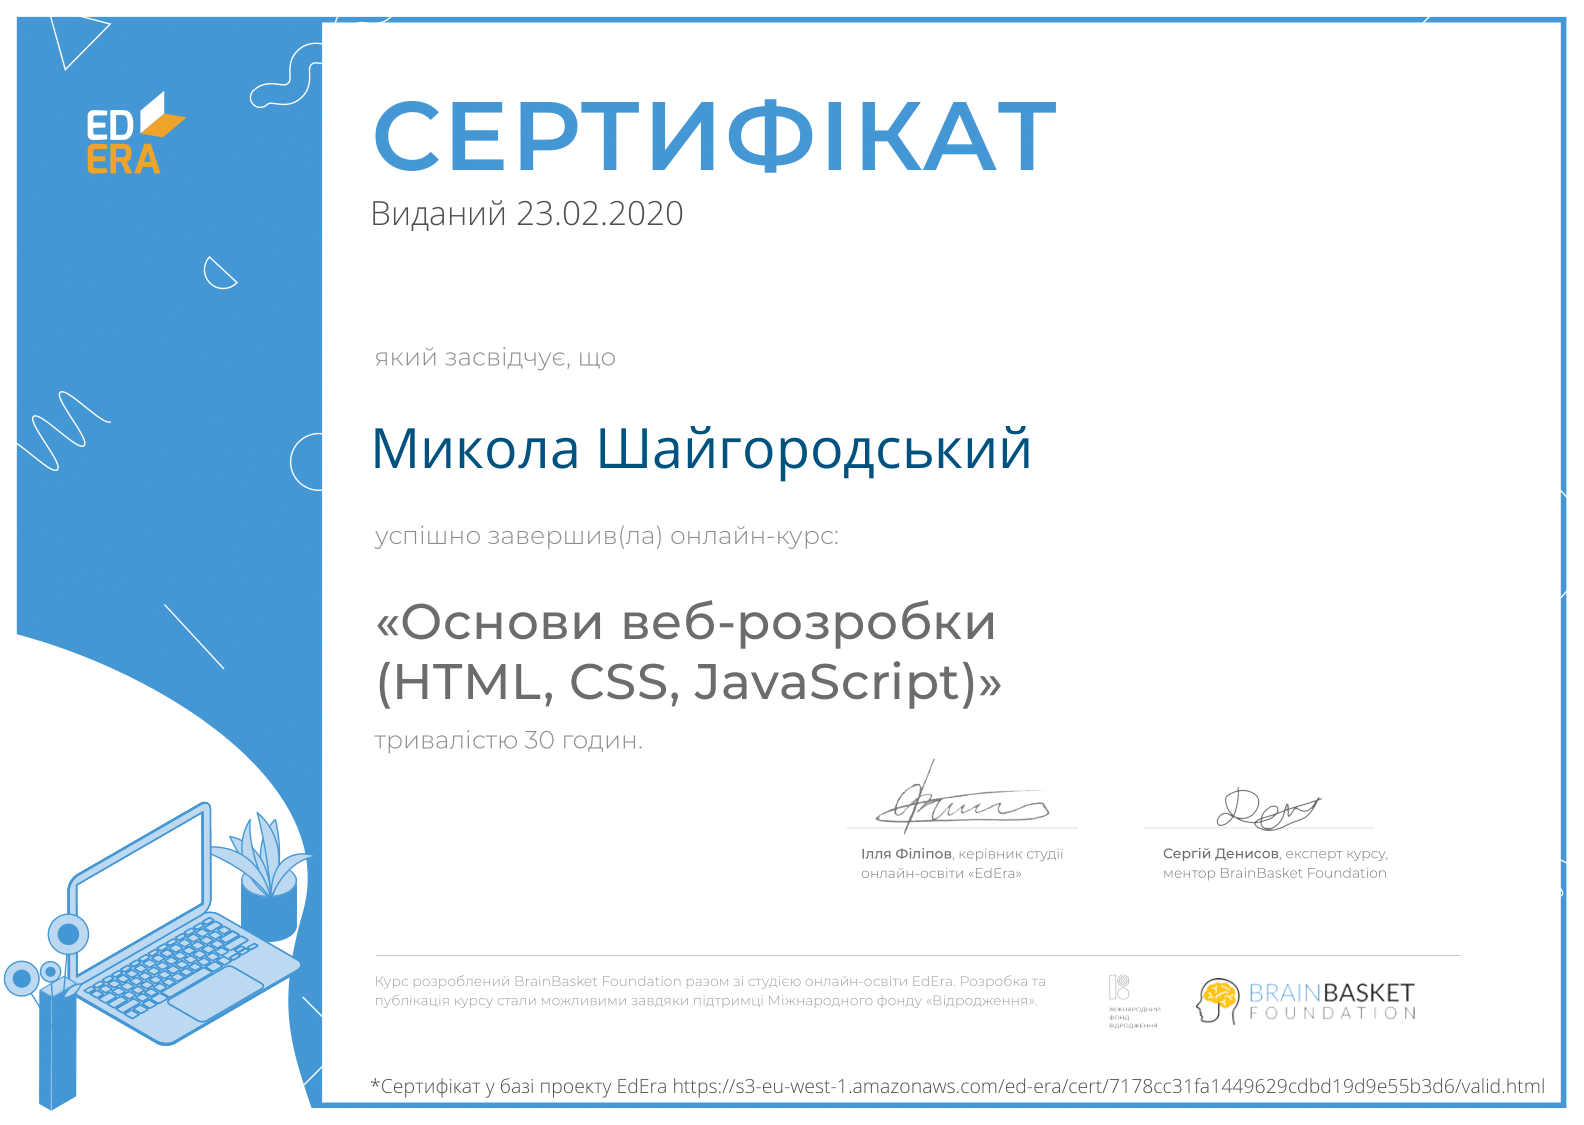 Основи веб-розробки (HTML, CSS, JavaScript) (Ed-era)